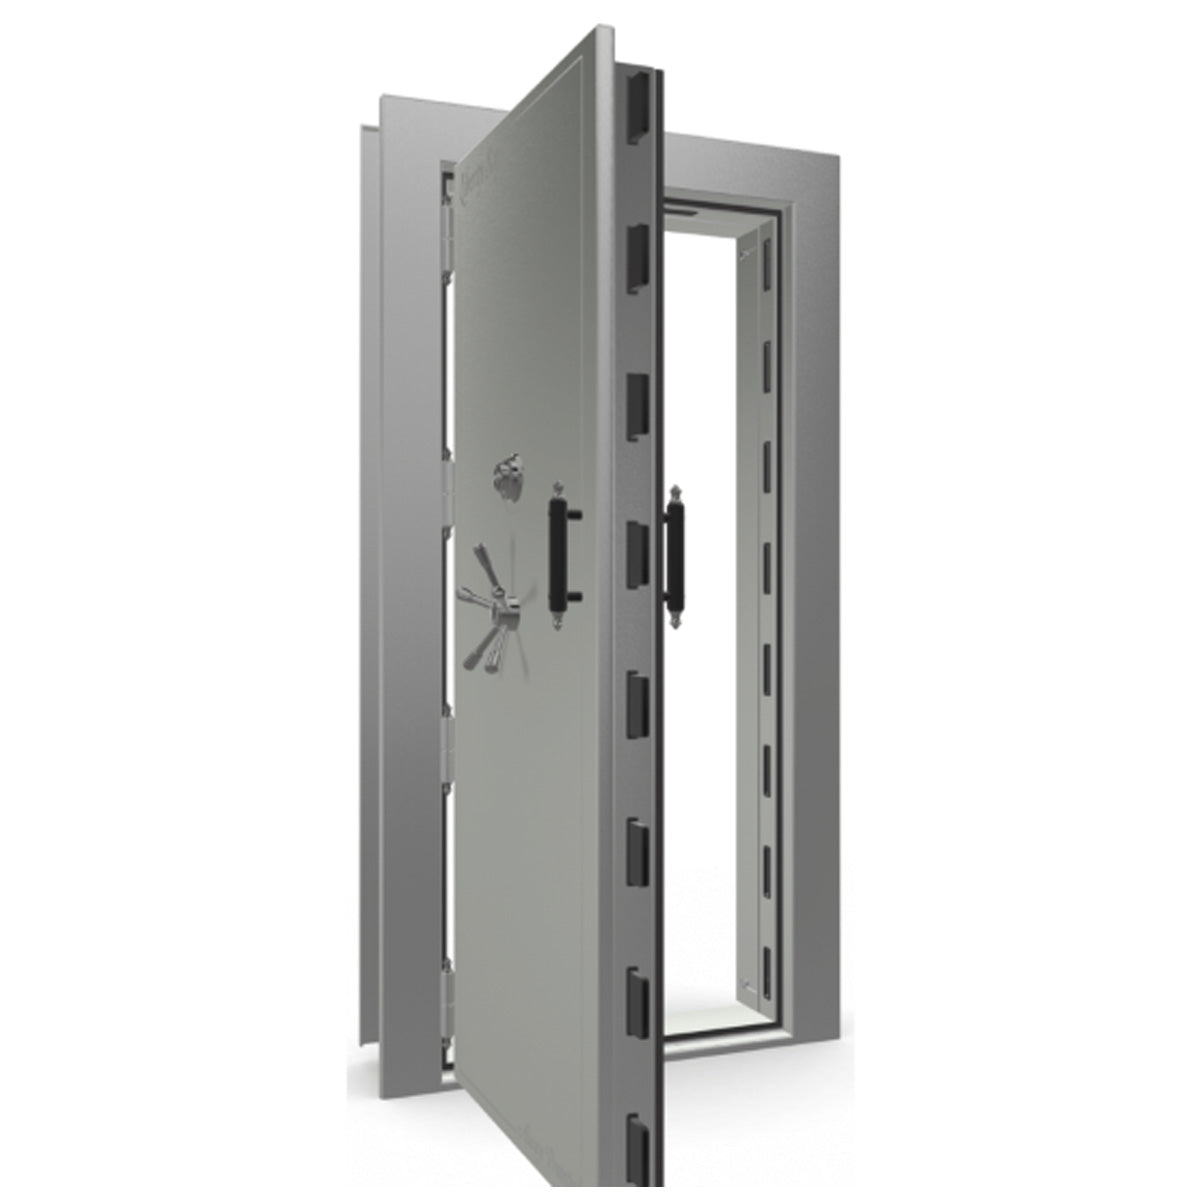 The Beast Vault Door in Gray Gloss with Black Chrome Electronic Lock, Left Outswing, door open.